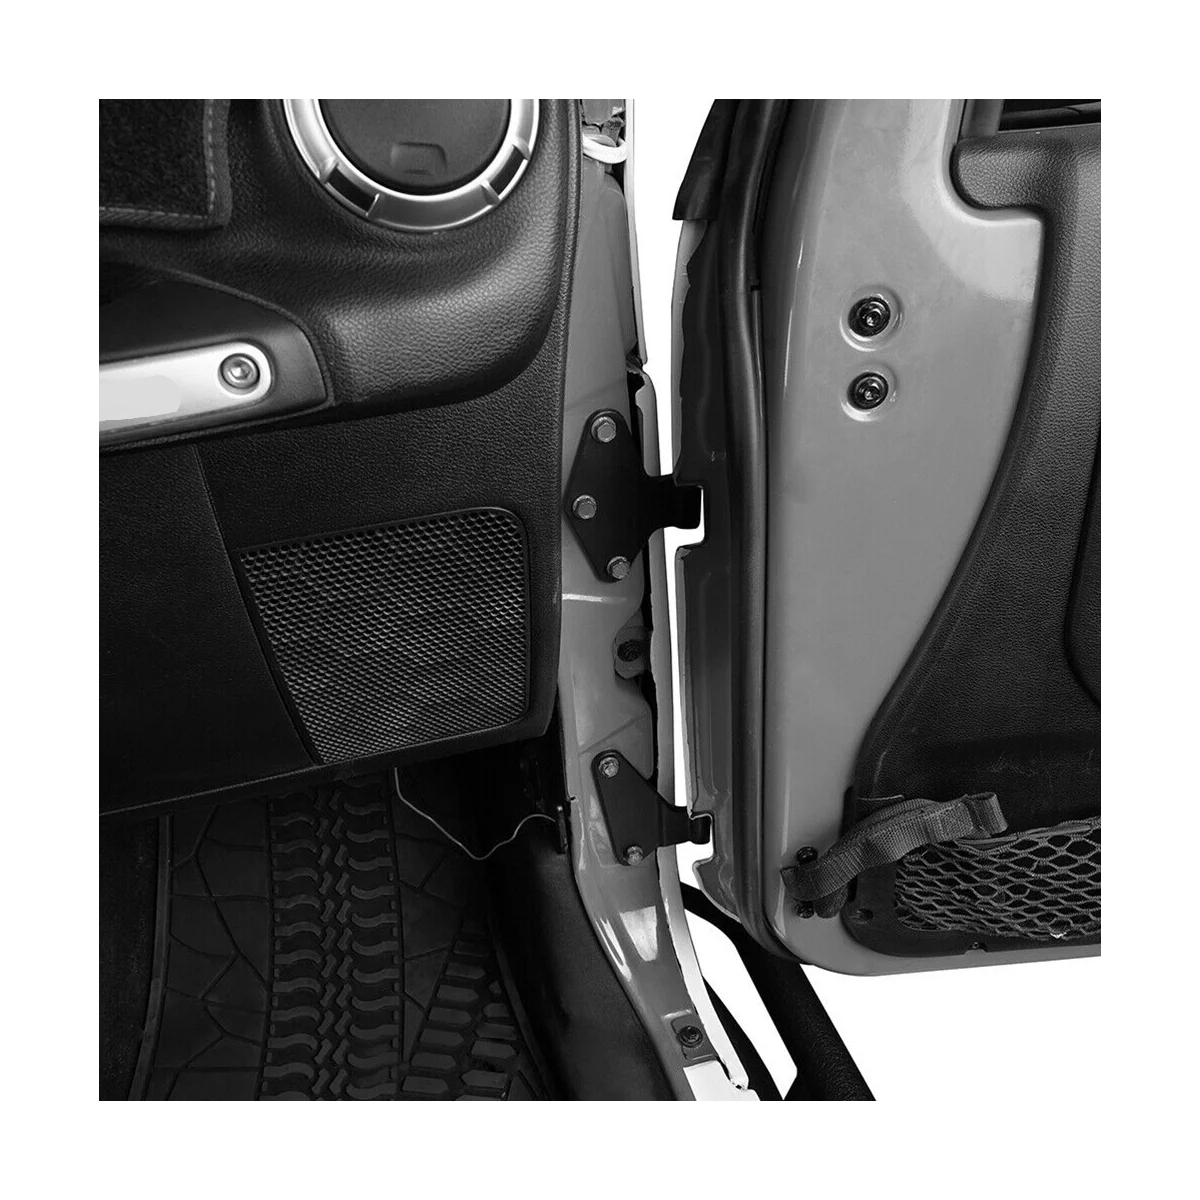 Комплект крепления 4-х дверных петель со стороны кузова автомобиля из нержавеющей стали для Wrangler JK 2007-2018